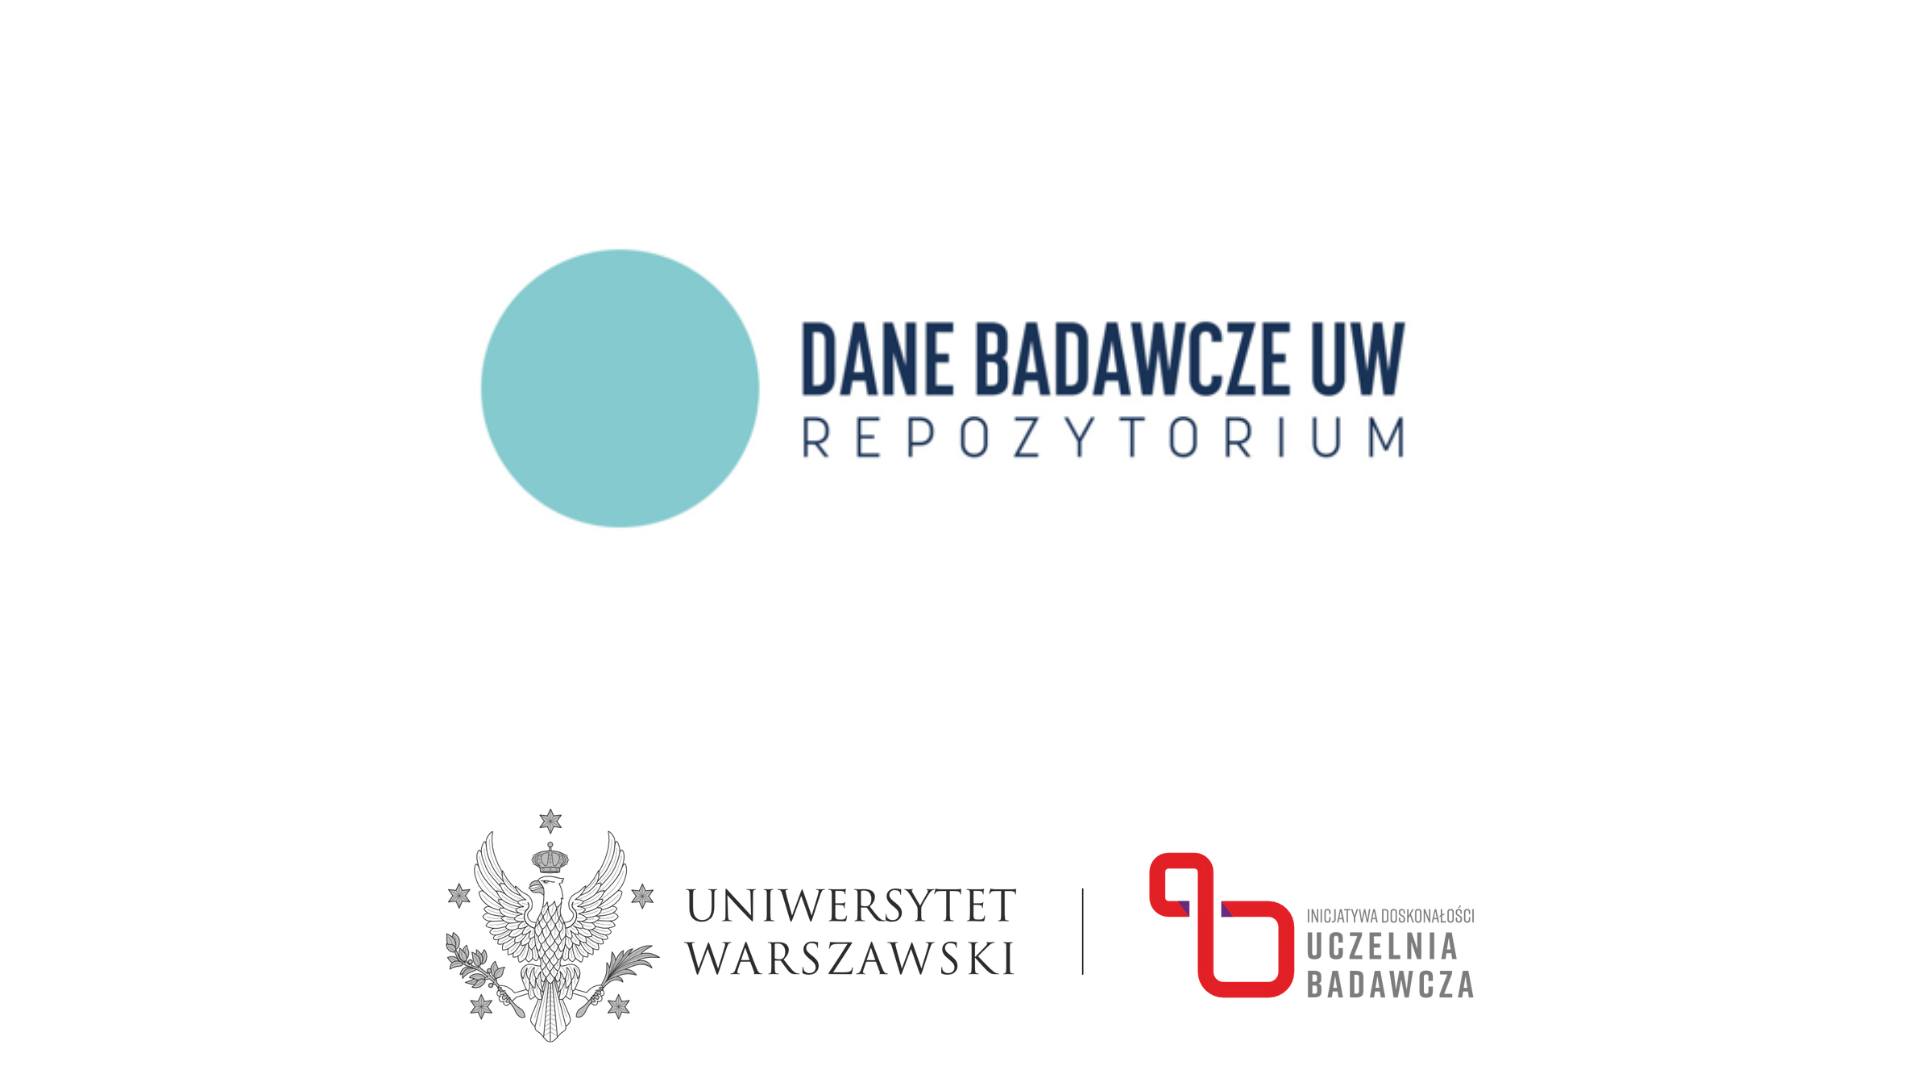 Repozytorium Dane Badawcze UW